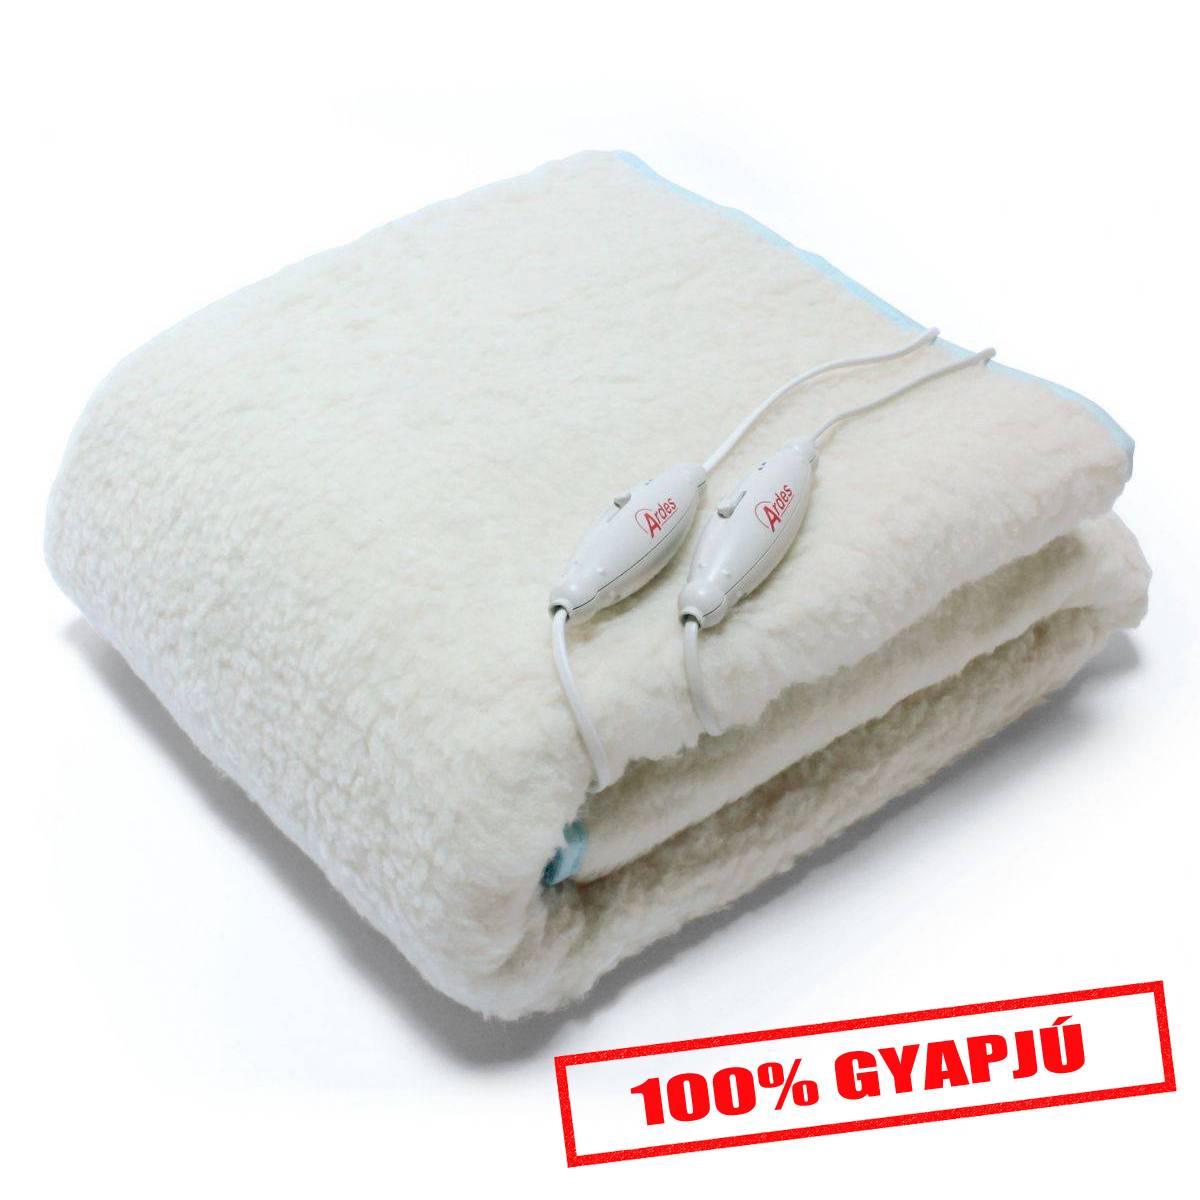 ARDES 422 Ágymelegítő takaró 100% gyapjú (150x160 cm) (MK)